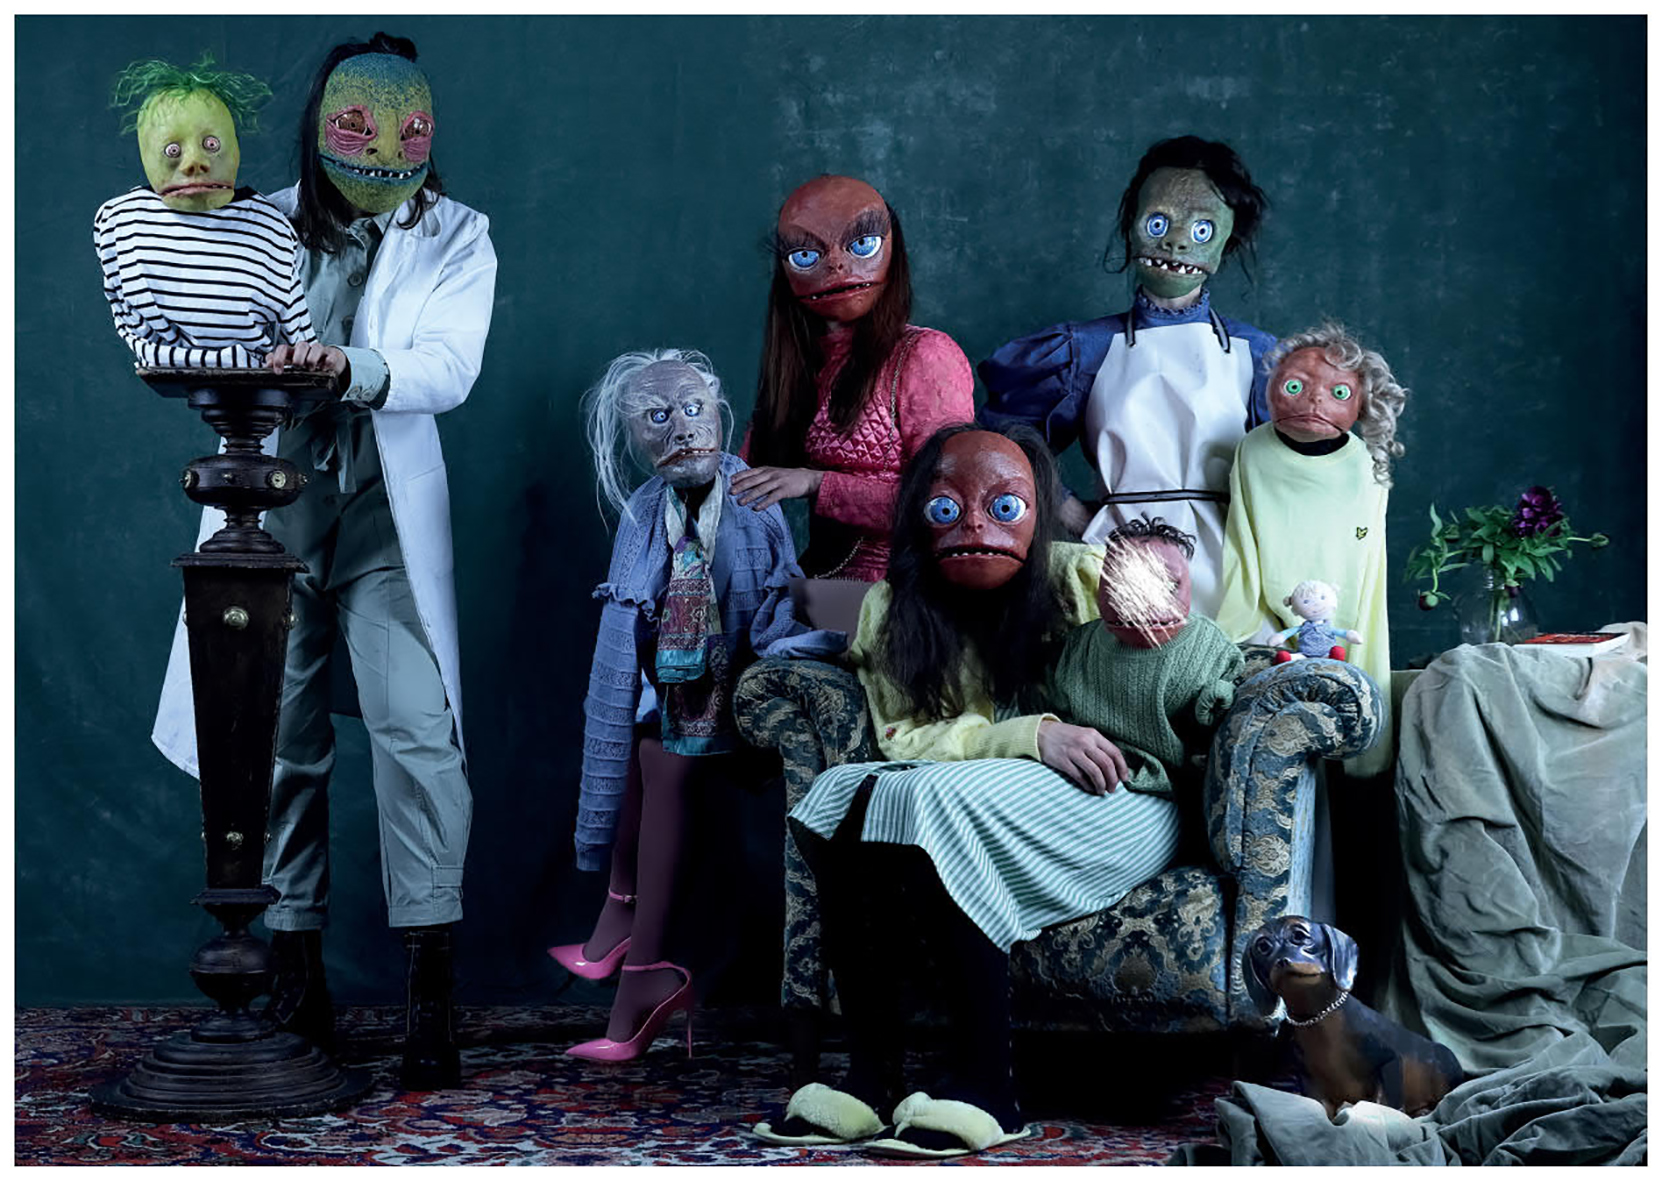 Wie auf einem ein Familienfoto aufgestellt: 2 Erwachsene und 5 Kinder. Alle mit Masken und Kostüm. Beim kleinsten Kind ist das Gesicht übermalt.